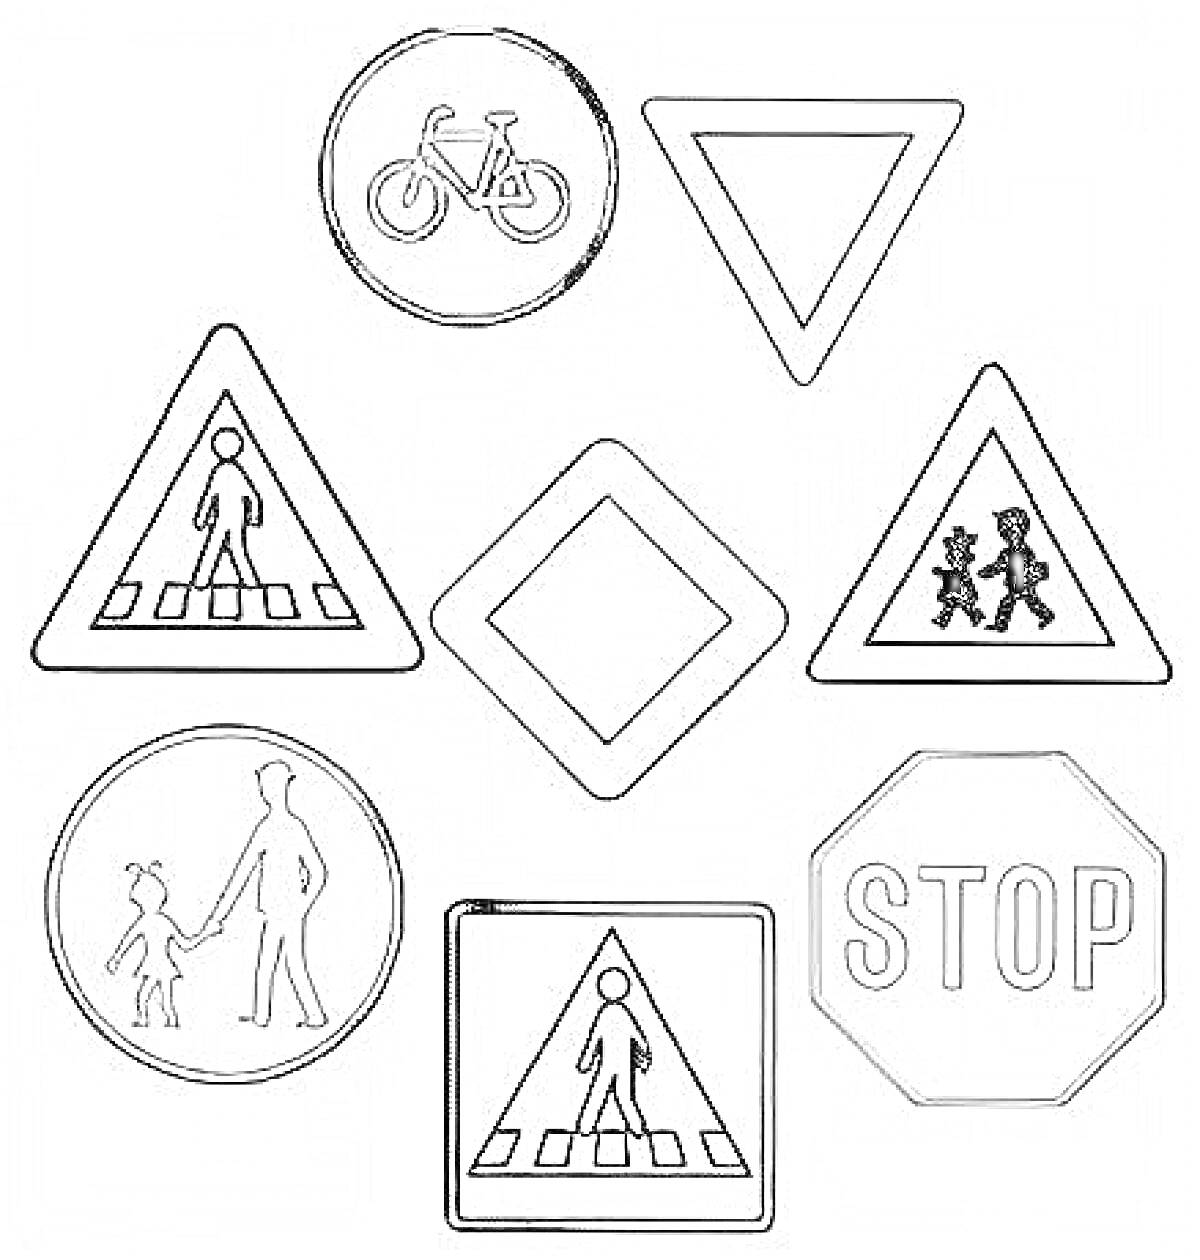 Раскраска Знаки дорожного движения. На картинке изображены восемь знаков: круглый знак с велосипедом, треугольный знак «Уступи дорогу», треугольный знак с пешеходным переходом, ромбовидный знак, треугольный знак с детьми, круглый знак с пешеходом и ребенком, шестиг